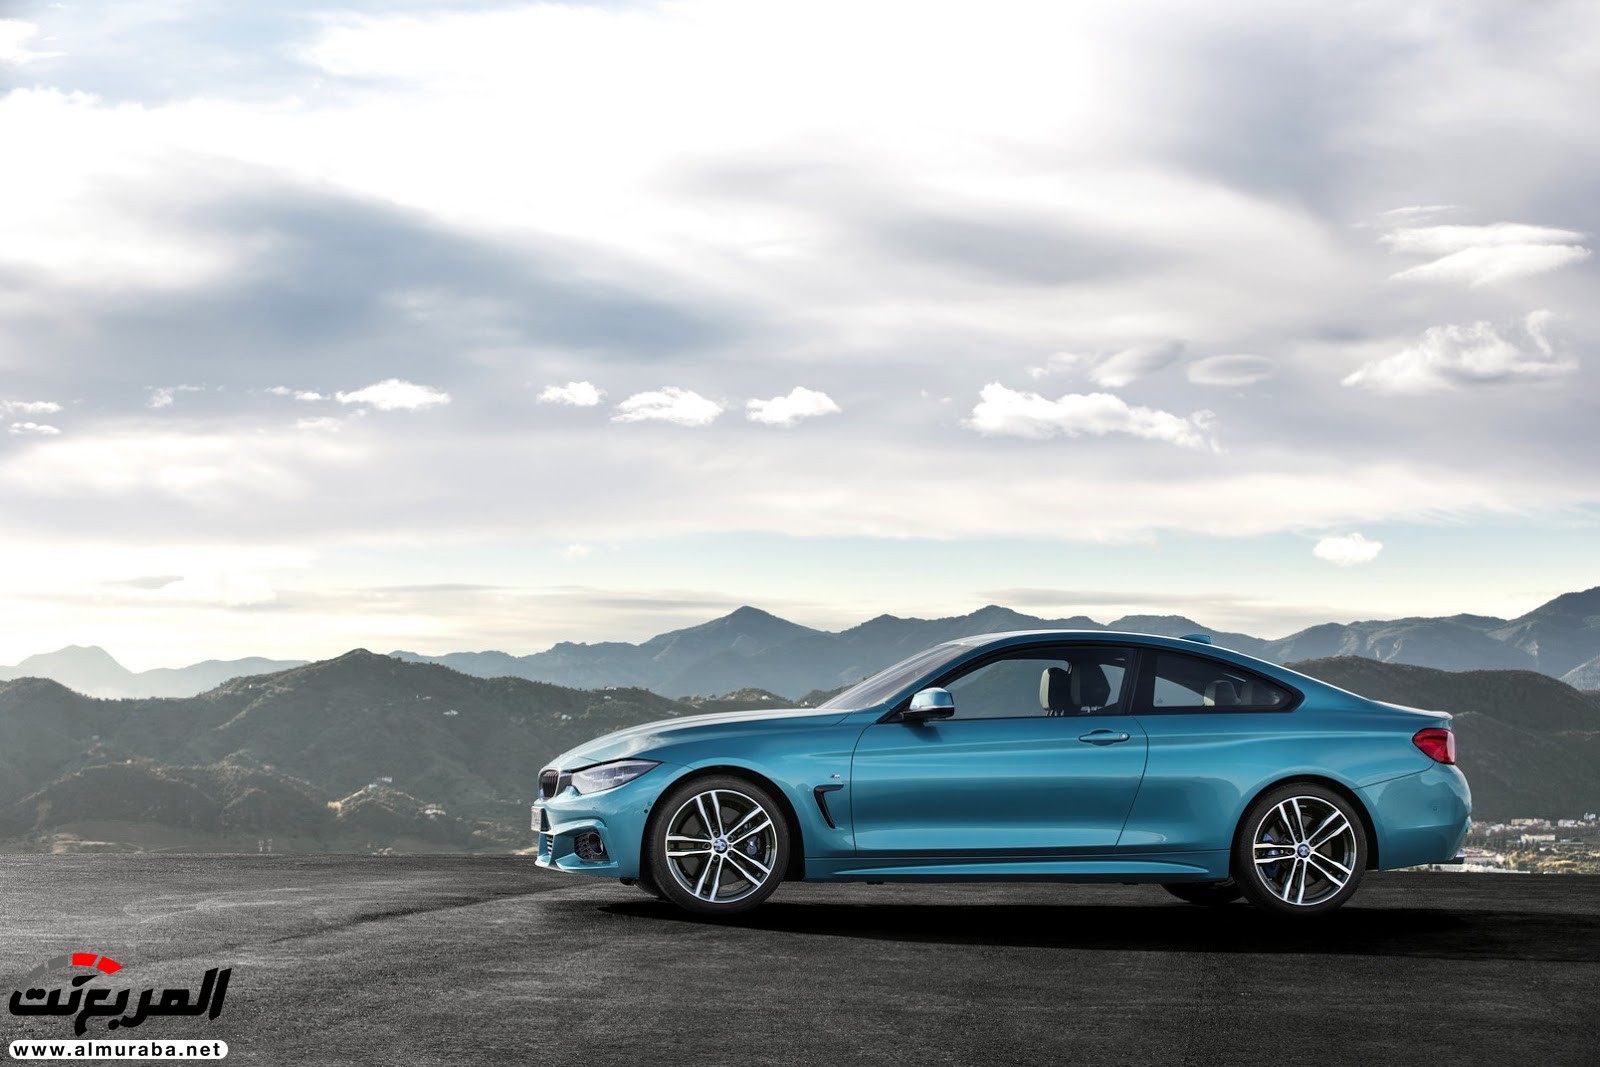 "بالصور" بي إم دبليو تكشف عن عائلة الفئة الرابعة 2018 بتحديثات منتصف العمر BMW 4-Series 41